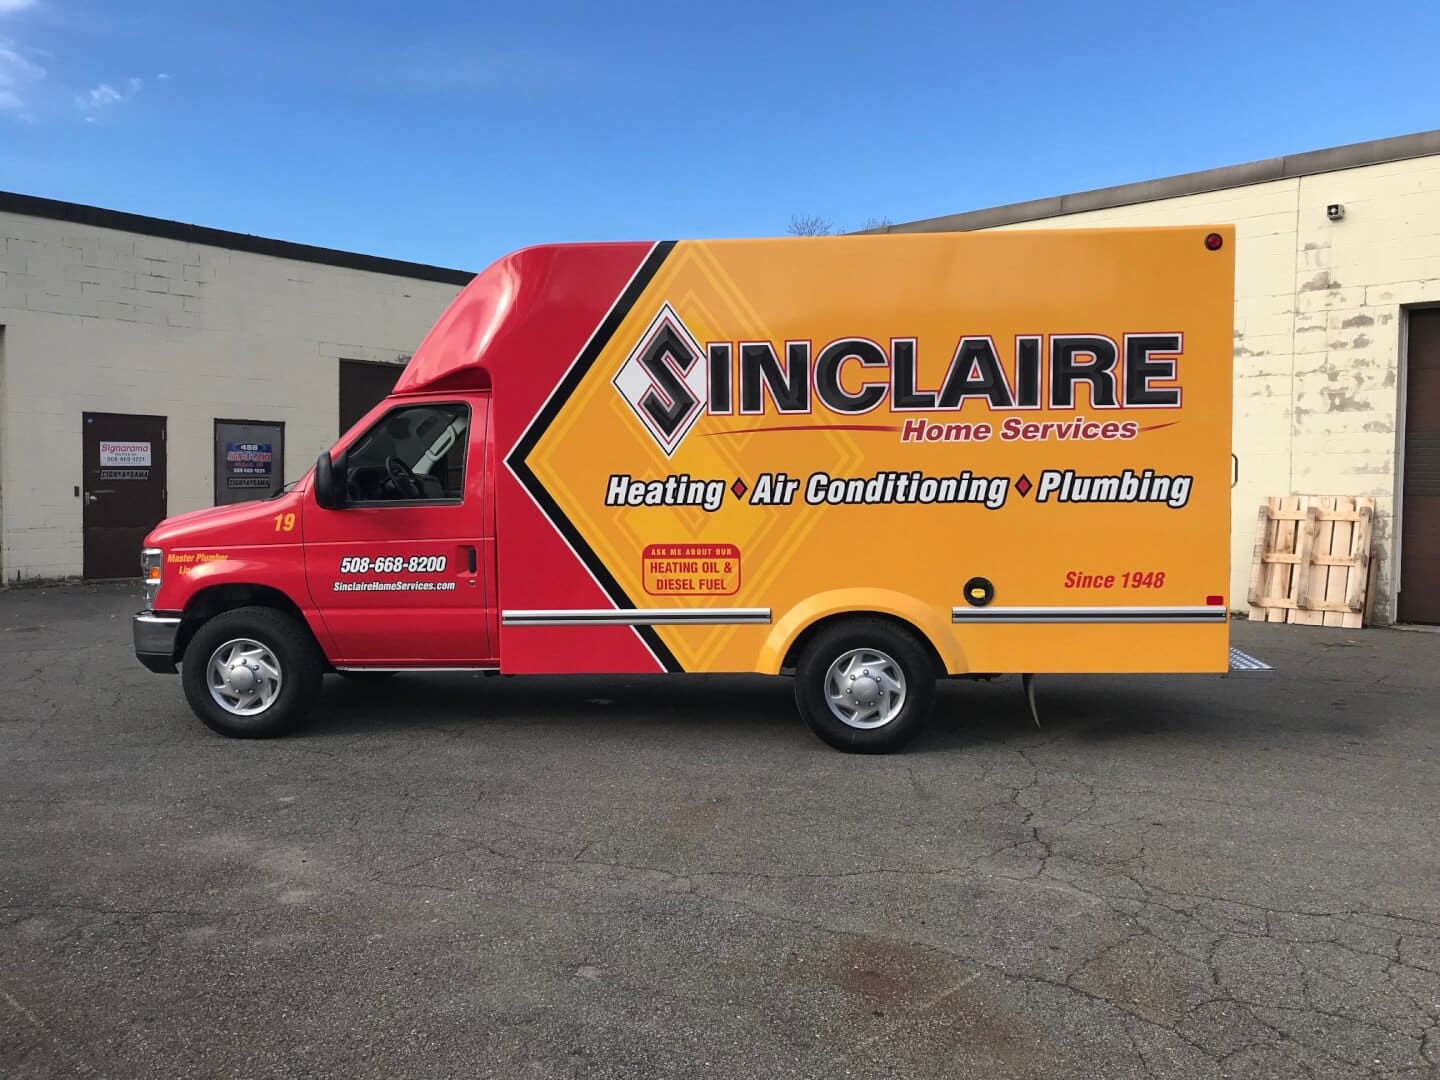 Sinclaire Service Van Image